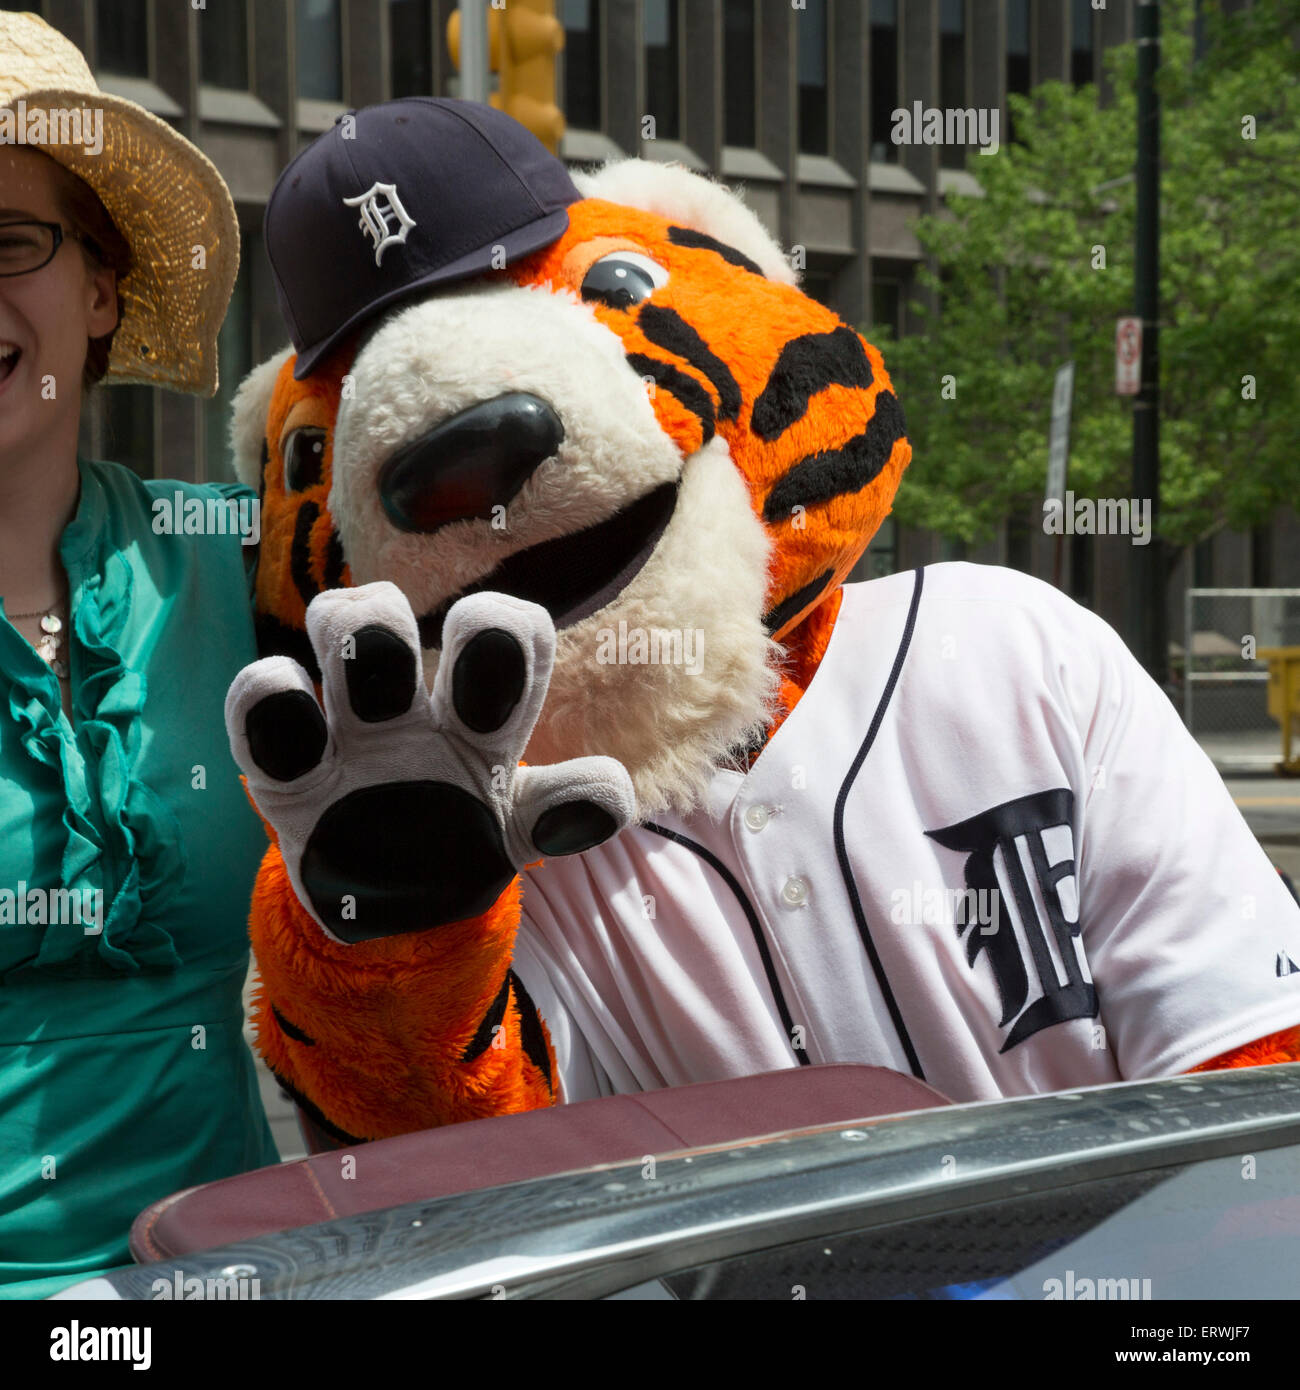 Detroit, Michigan - zampe, la mascotte dei Detroit Tigers squadra di baseball, fa la sua comparsa in un Gay Pride Parade. Foto Stock